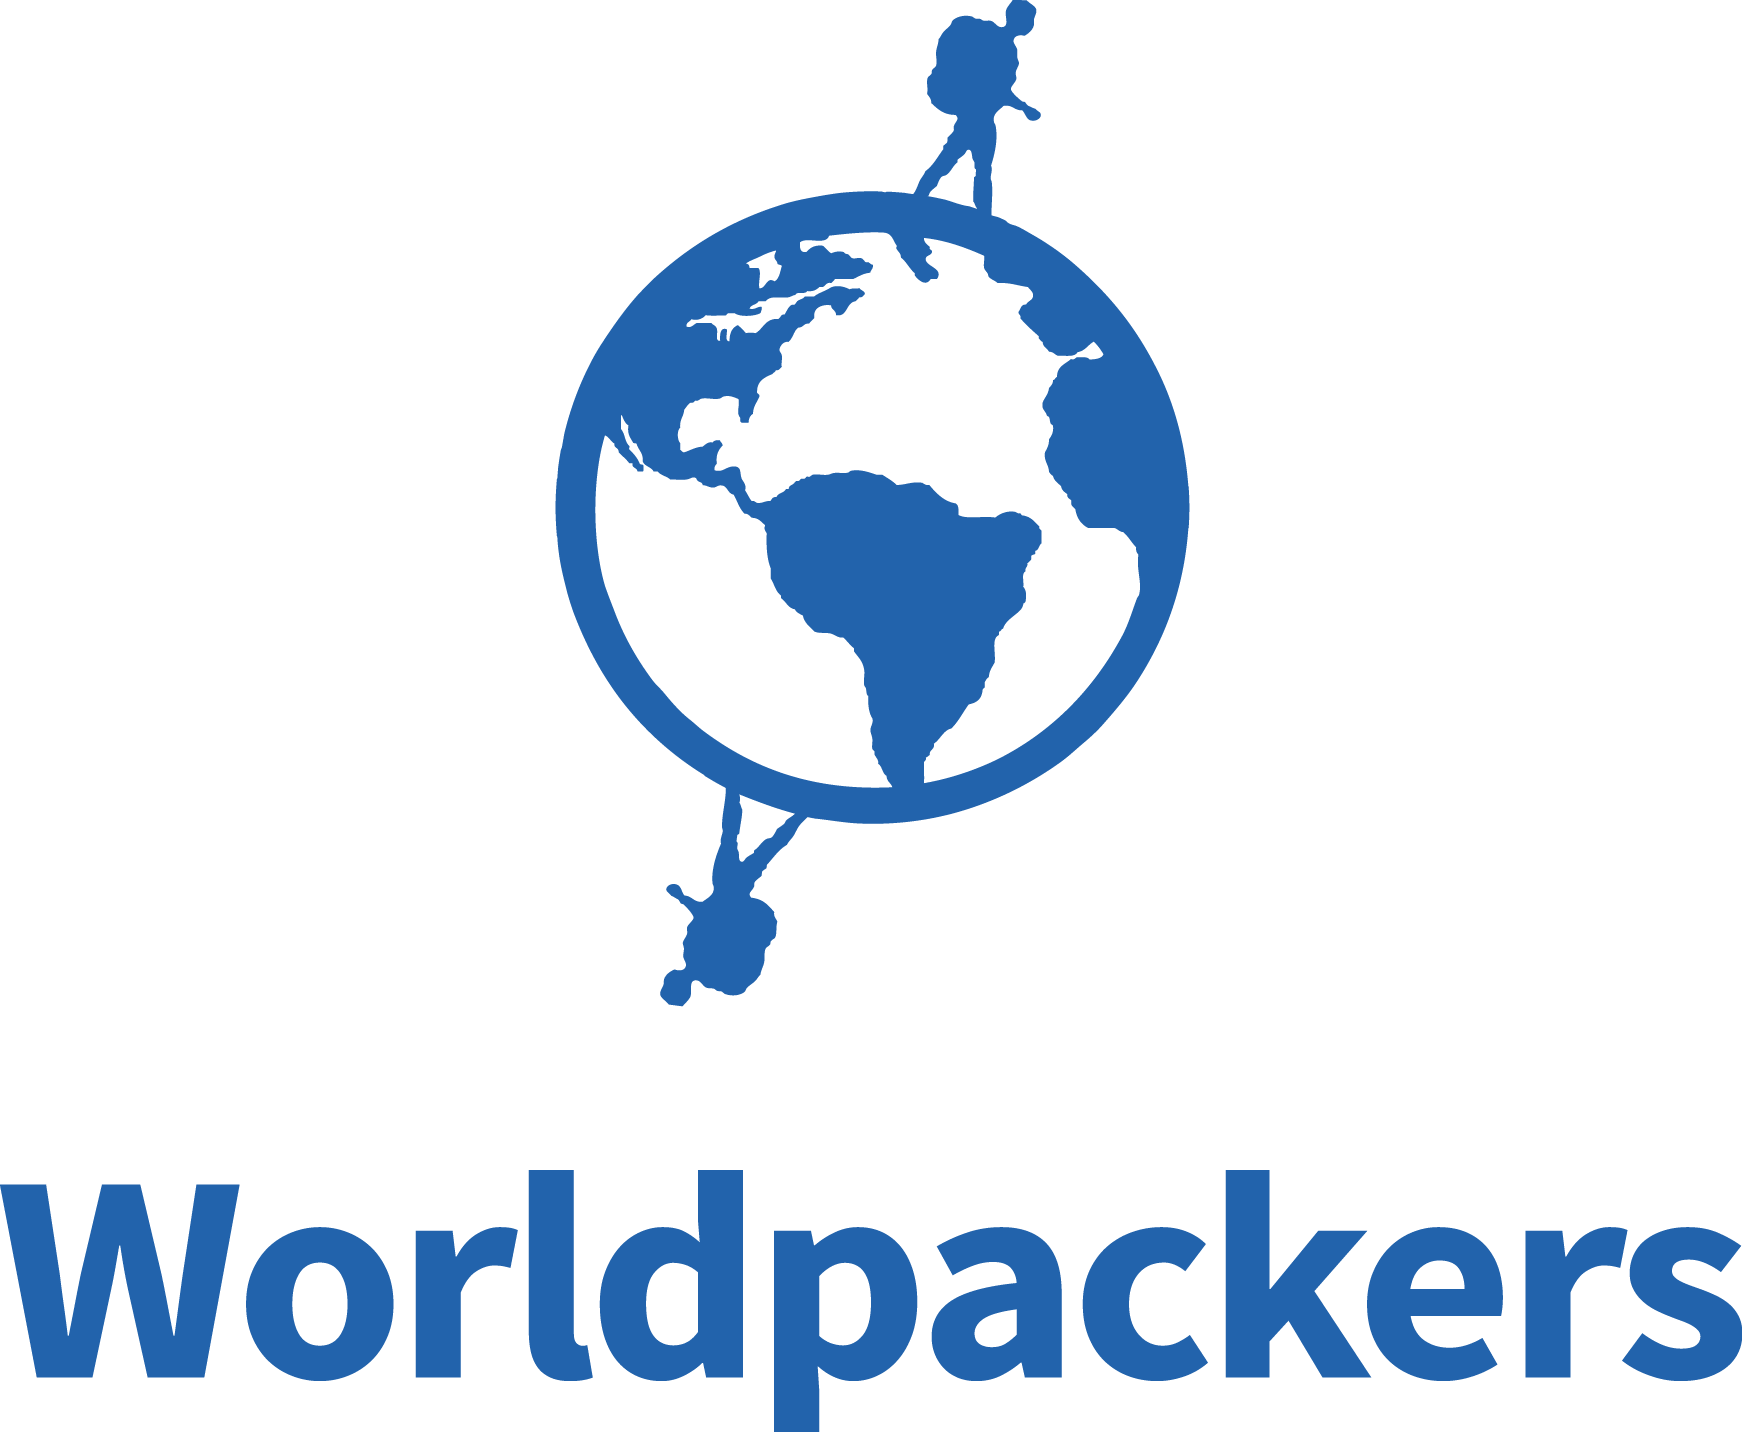 Worldpackers volunteering